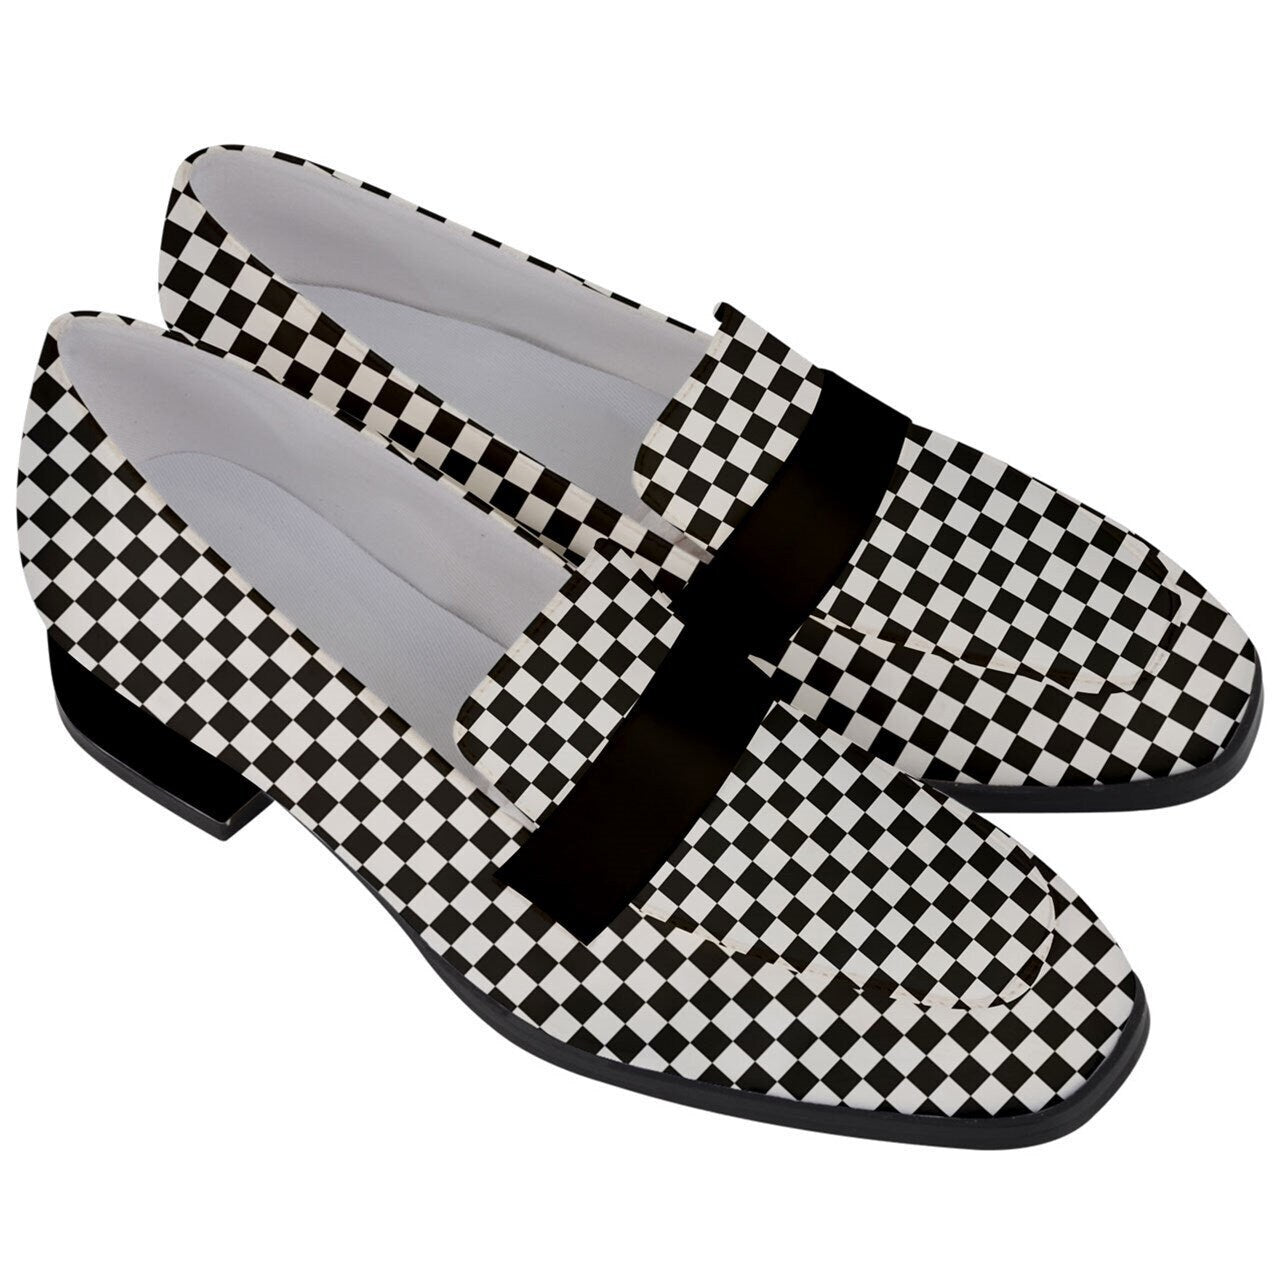 Damen-Loafer, Karo-Loafer, Schwarz-Weiß-Loafer, Loafer für Damen, Karo-Schuhe, Loafer im Vintage-Stil, einzigartige Loafer, klobige Absätze für Damen